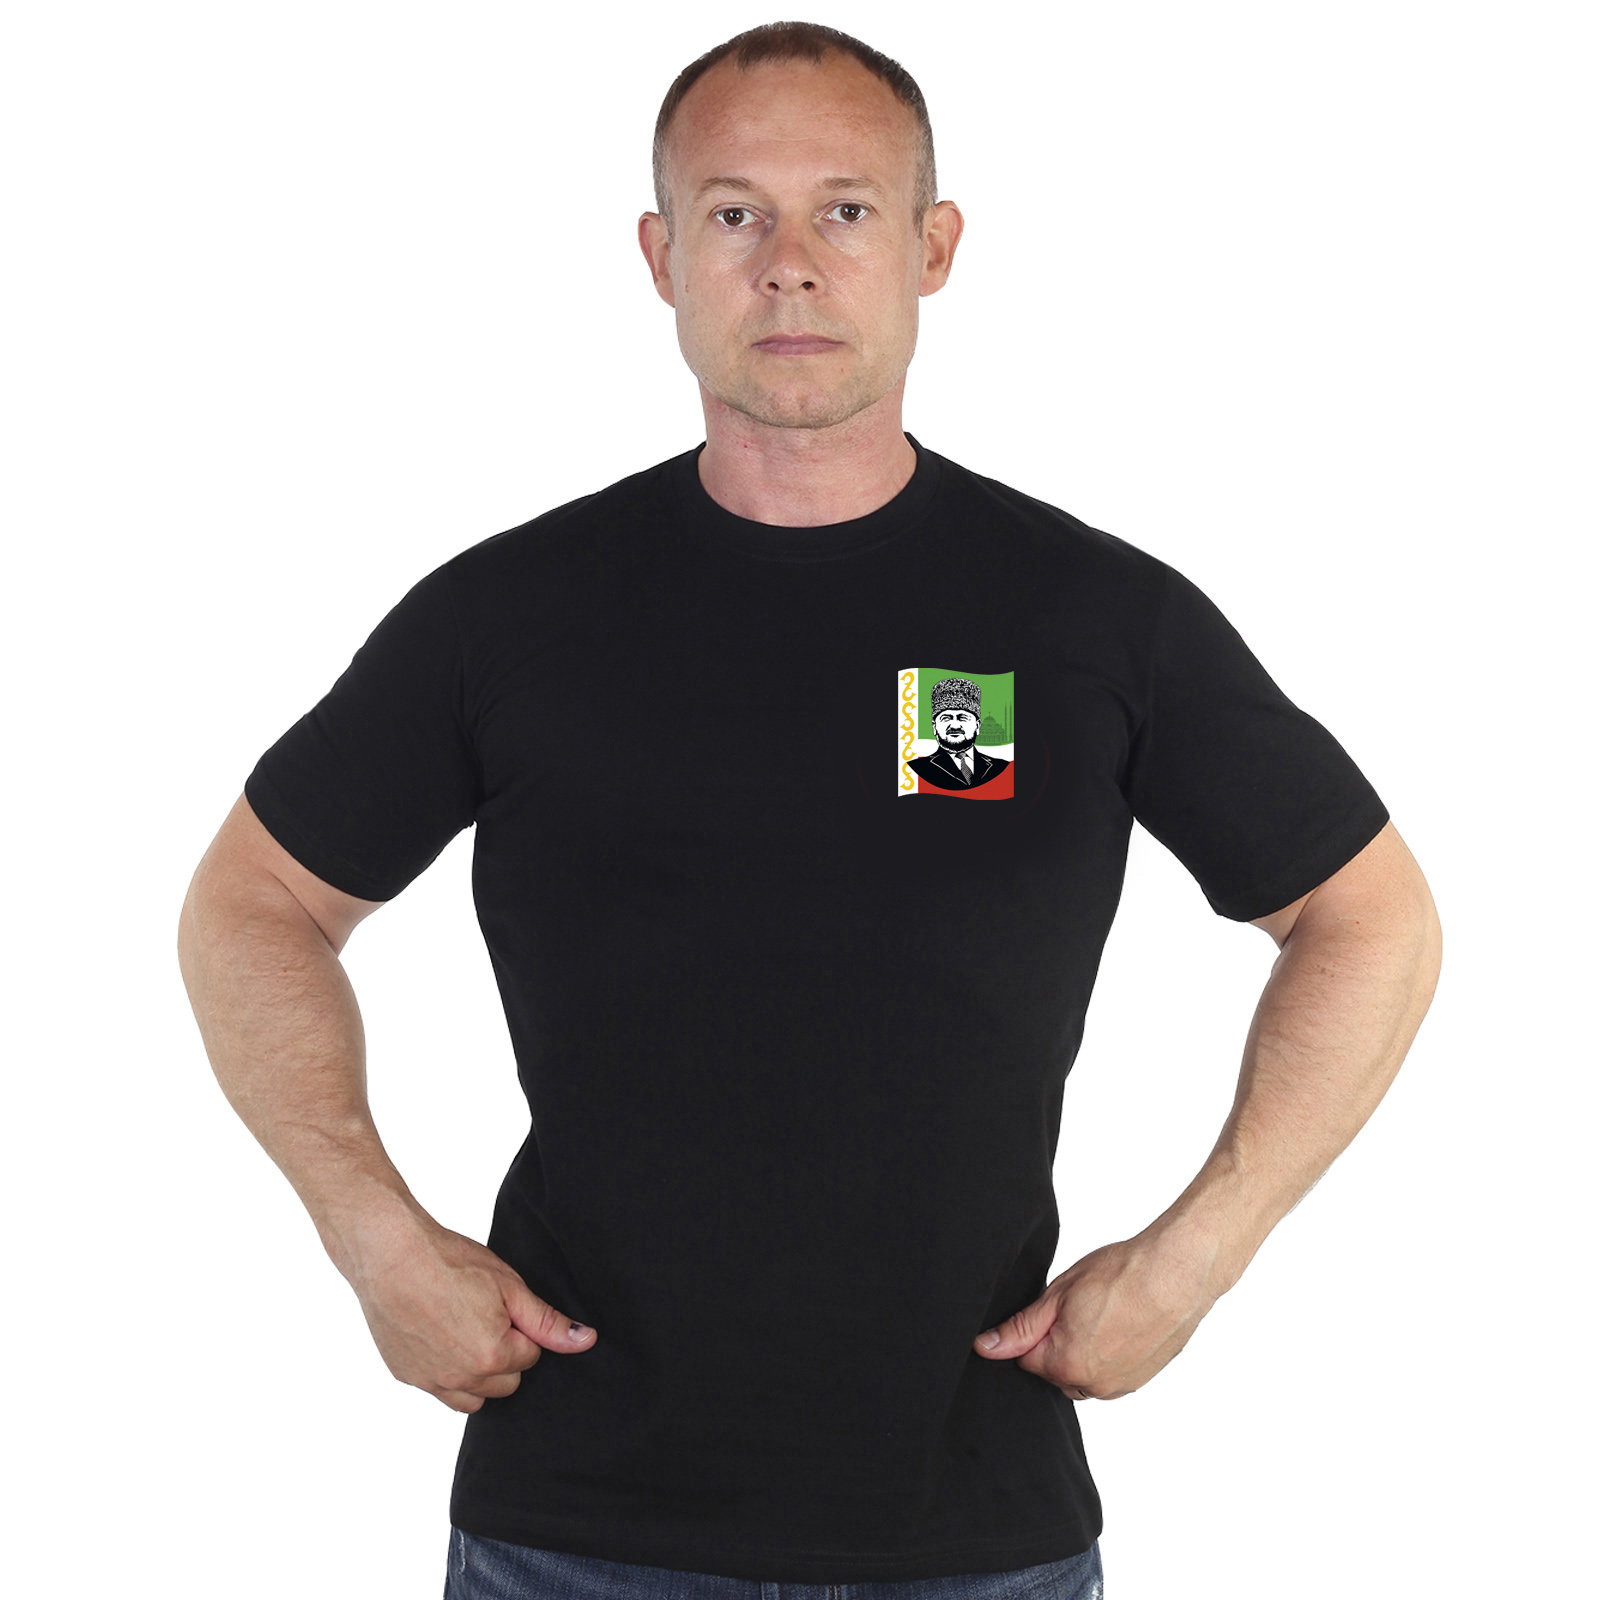 Мужская футболка с фото Ахмата Кадырова